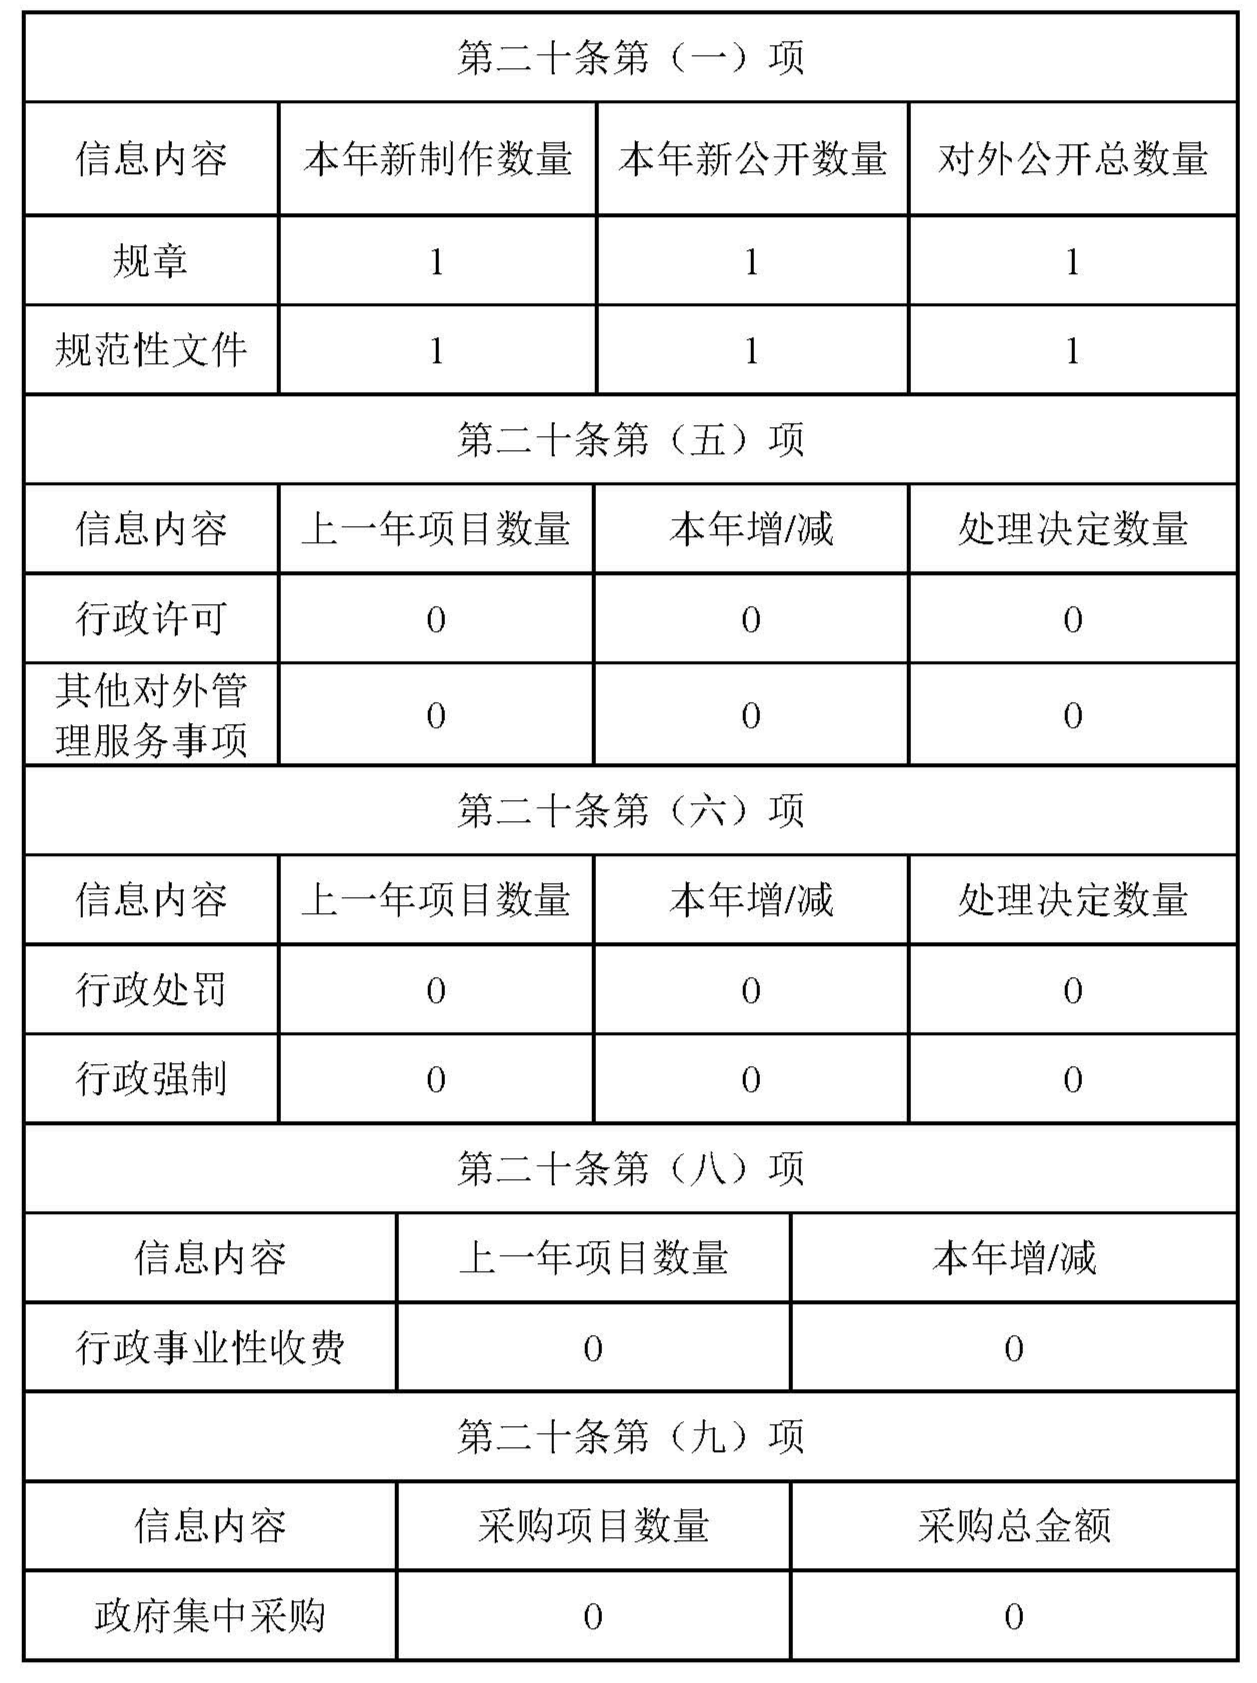 广州开发区云埔工业区管理委员会2020年政府信息公开工作年度报告_页面_2.jpg